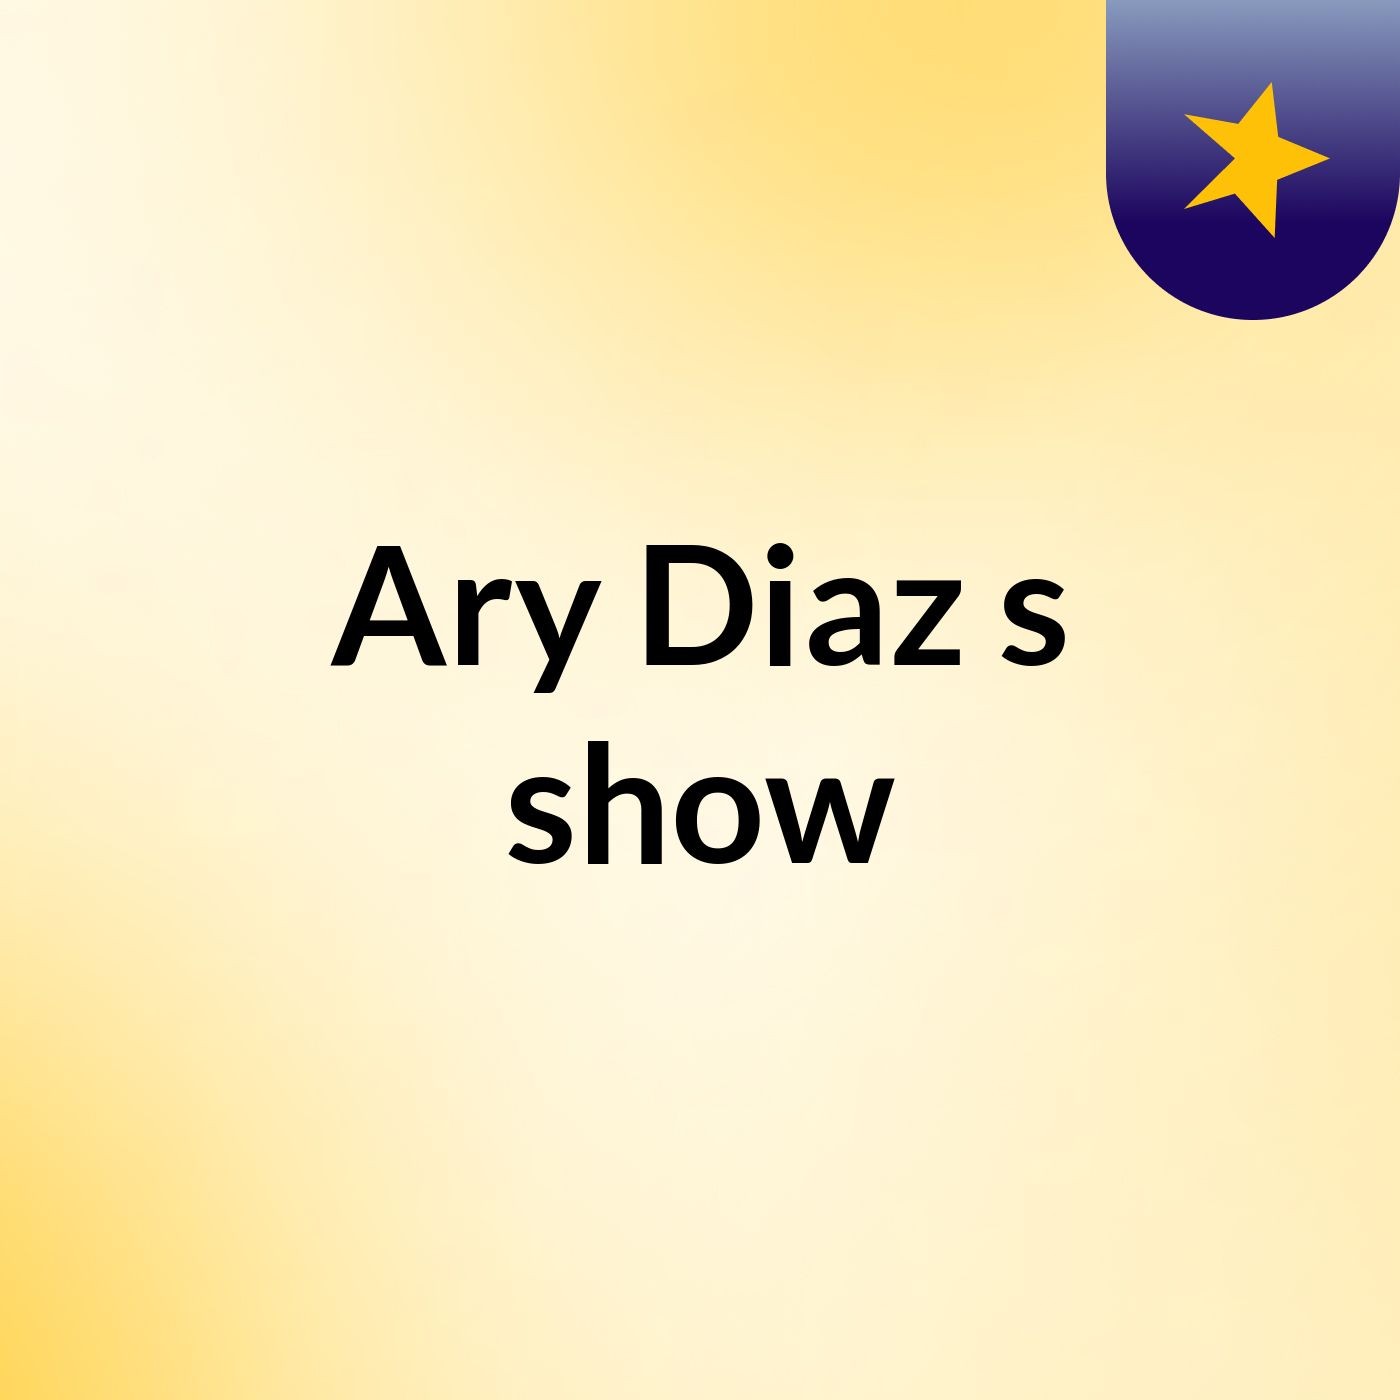 Ary Diaz's show